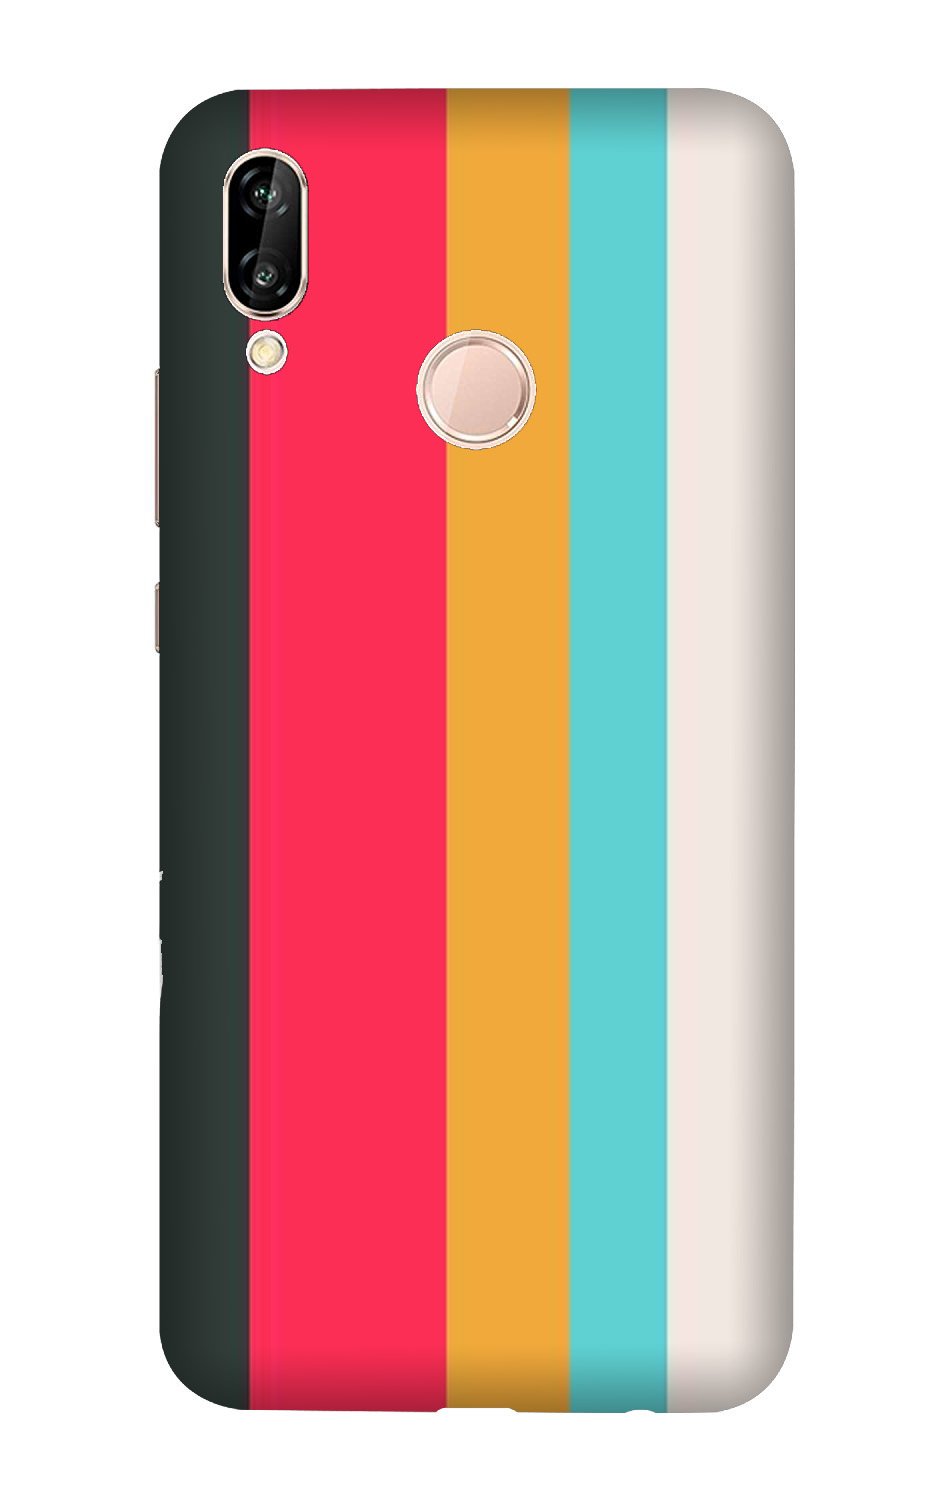 Color Pattern Mobile Back Case for Xiaomi Redmi Note 7S (Design - 369)